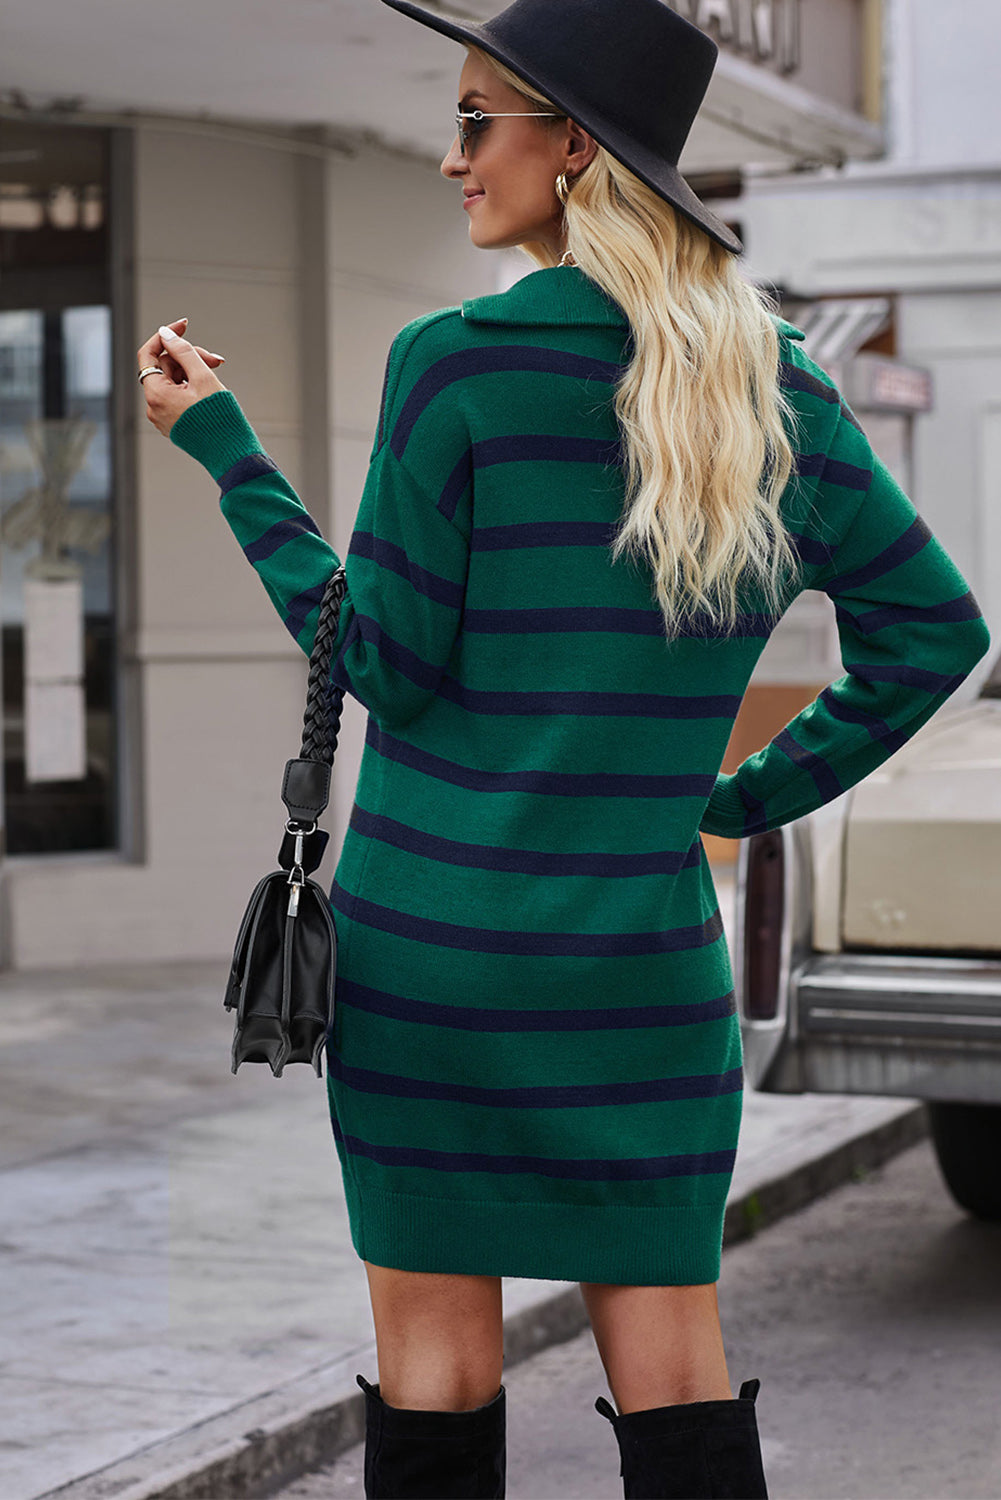 Clarkia Sweater Dress